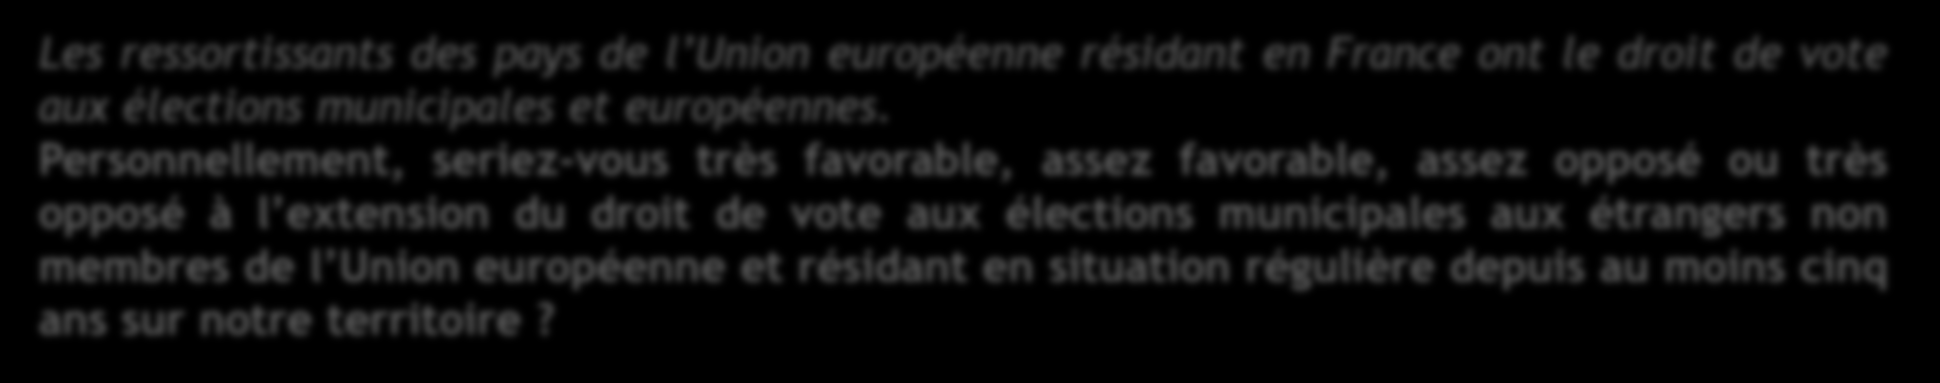 Approbation du droit de vote des étrangers Selon la proximité partisane Les ressortissants des pays de l Union européenne résidant en France ont le droit de vote aux élections municipales et